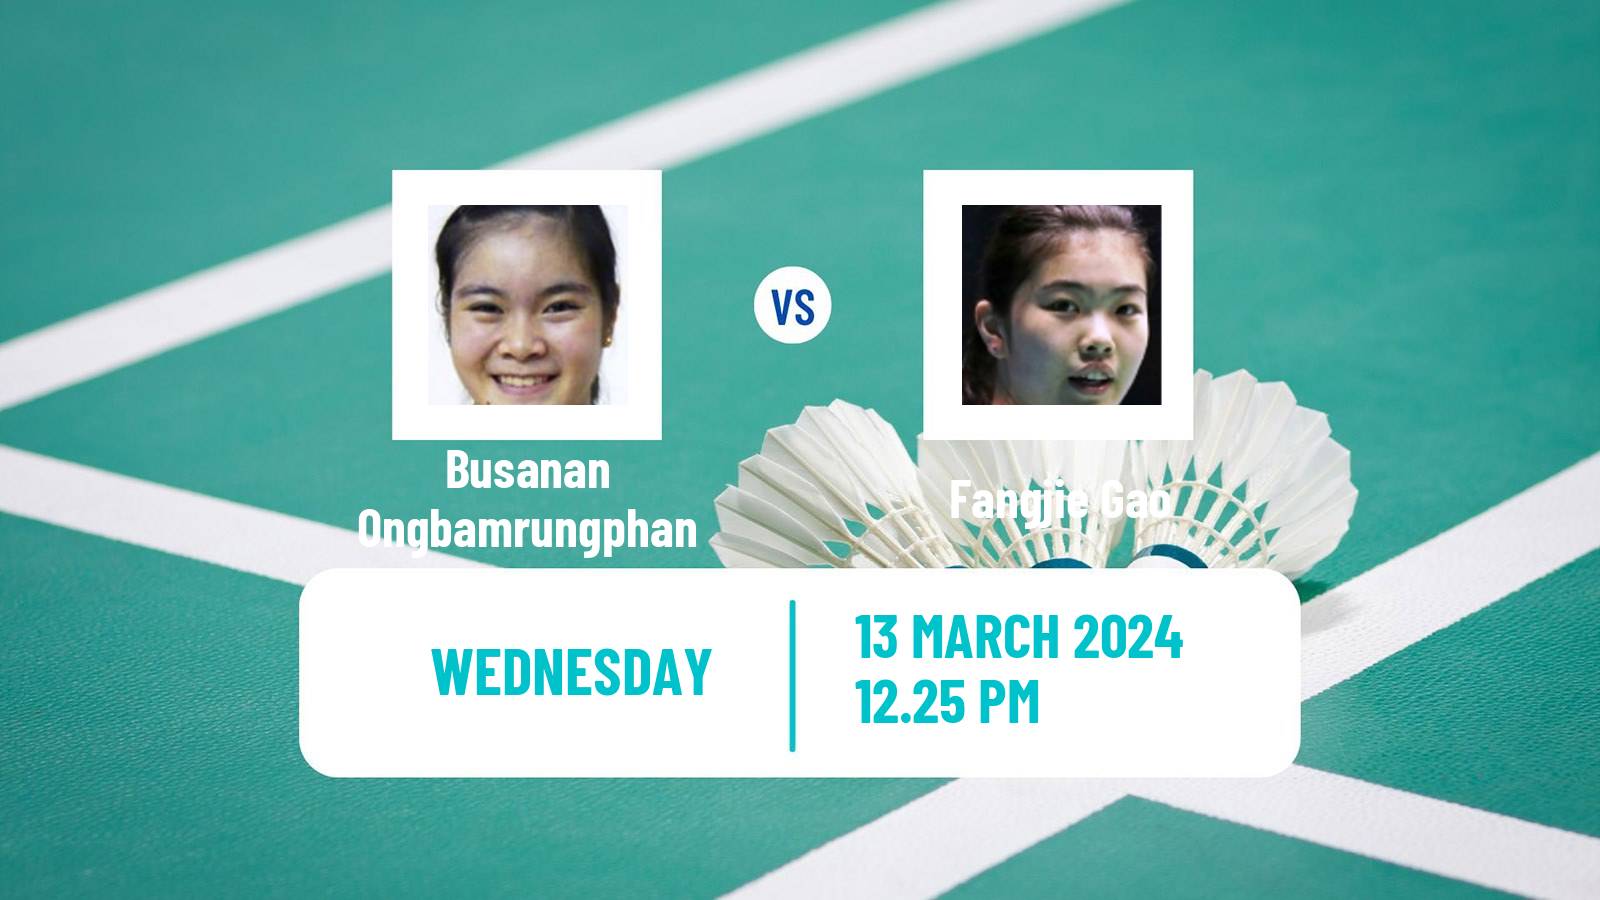 Badminton BWF World Tour All England Open Women Busanan Ongbamrungphan - Fangjie Gao